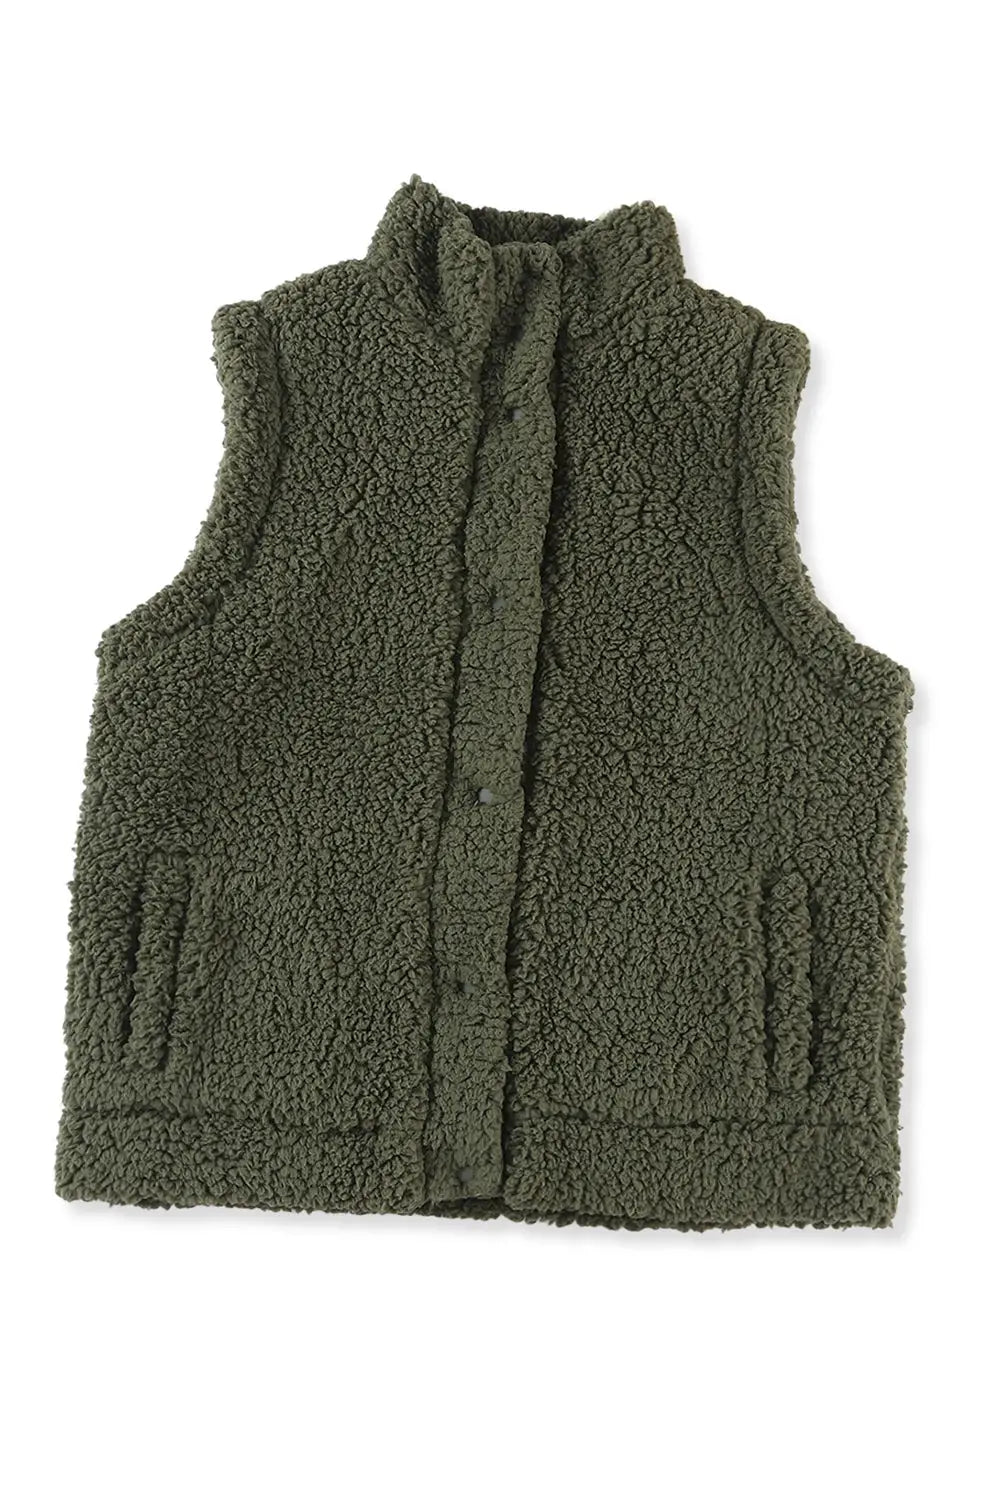 Khaki snap button pocketed sherpa vest jacket - vests